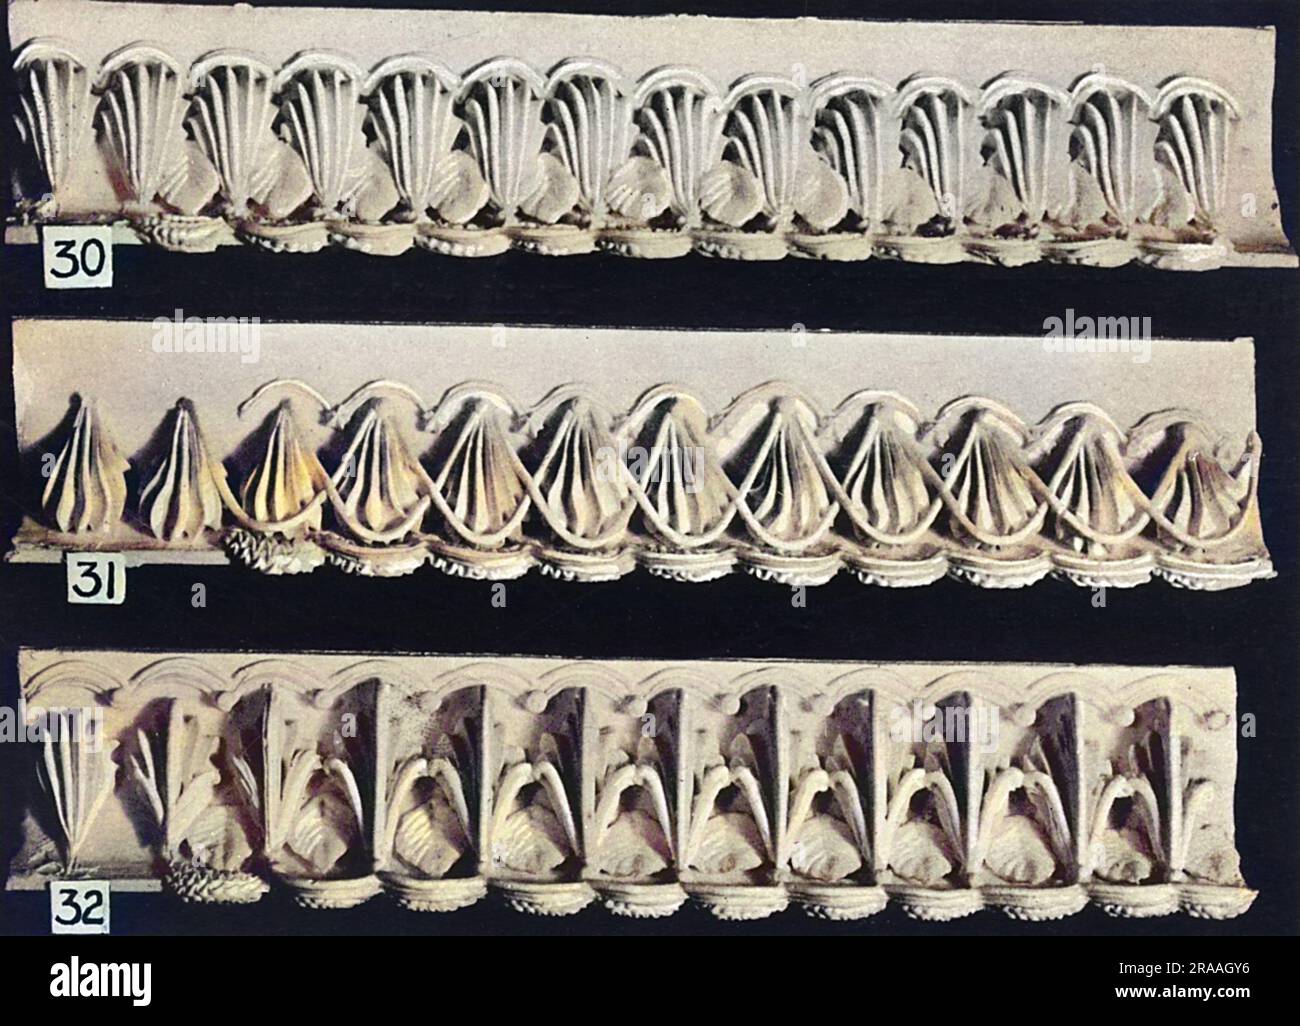 Motifs bordure à gâteau et volute latérale. (30) bordure de coque inversée, (31) coque verticale avec treillis, pour base, (32) bordure inférieure, coque inversée avec spirale. Date: 1936 Banque D'Images